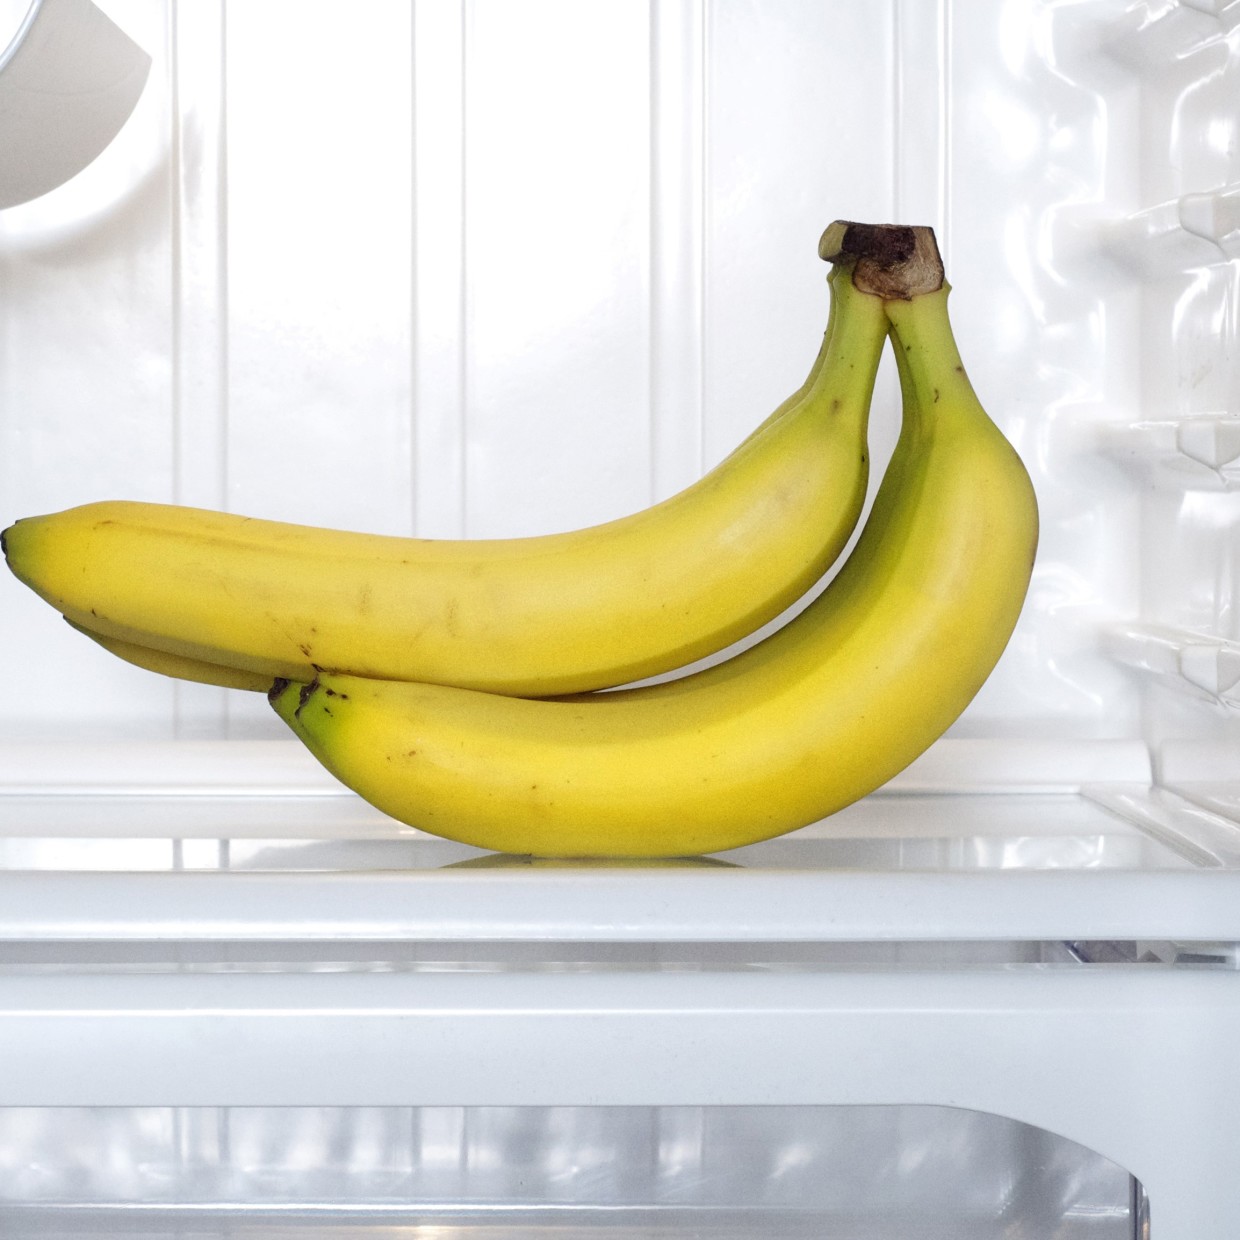  バナナ1週間観察記録。バナナを上手に保管する超簡単な方法とは？ 